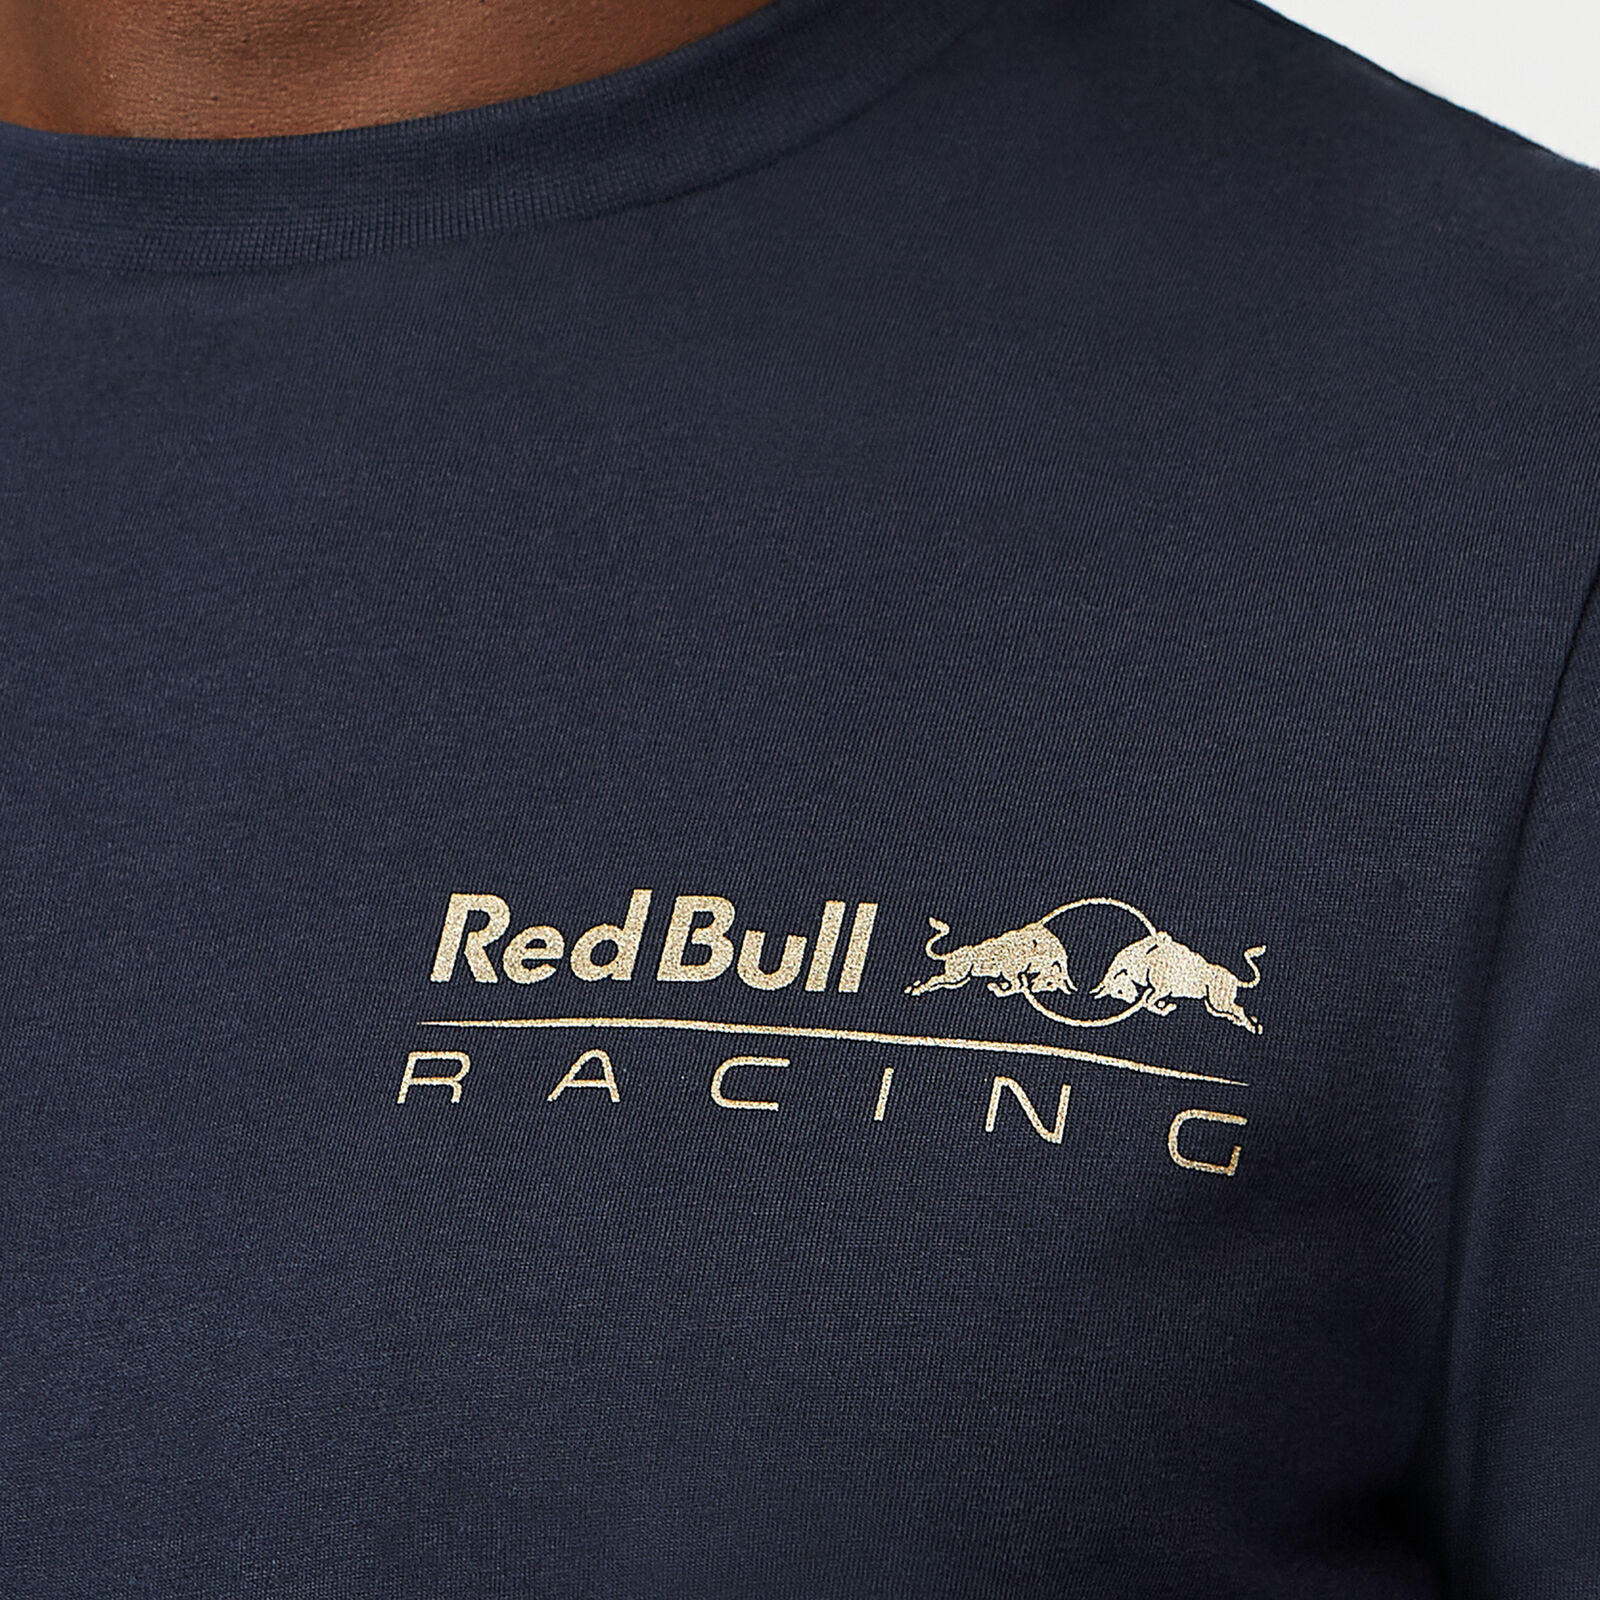 Red Bull Racing - Official Formula 1 Merchandise - Max Verstappen T-Shirt -  Men - Navy - M